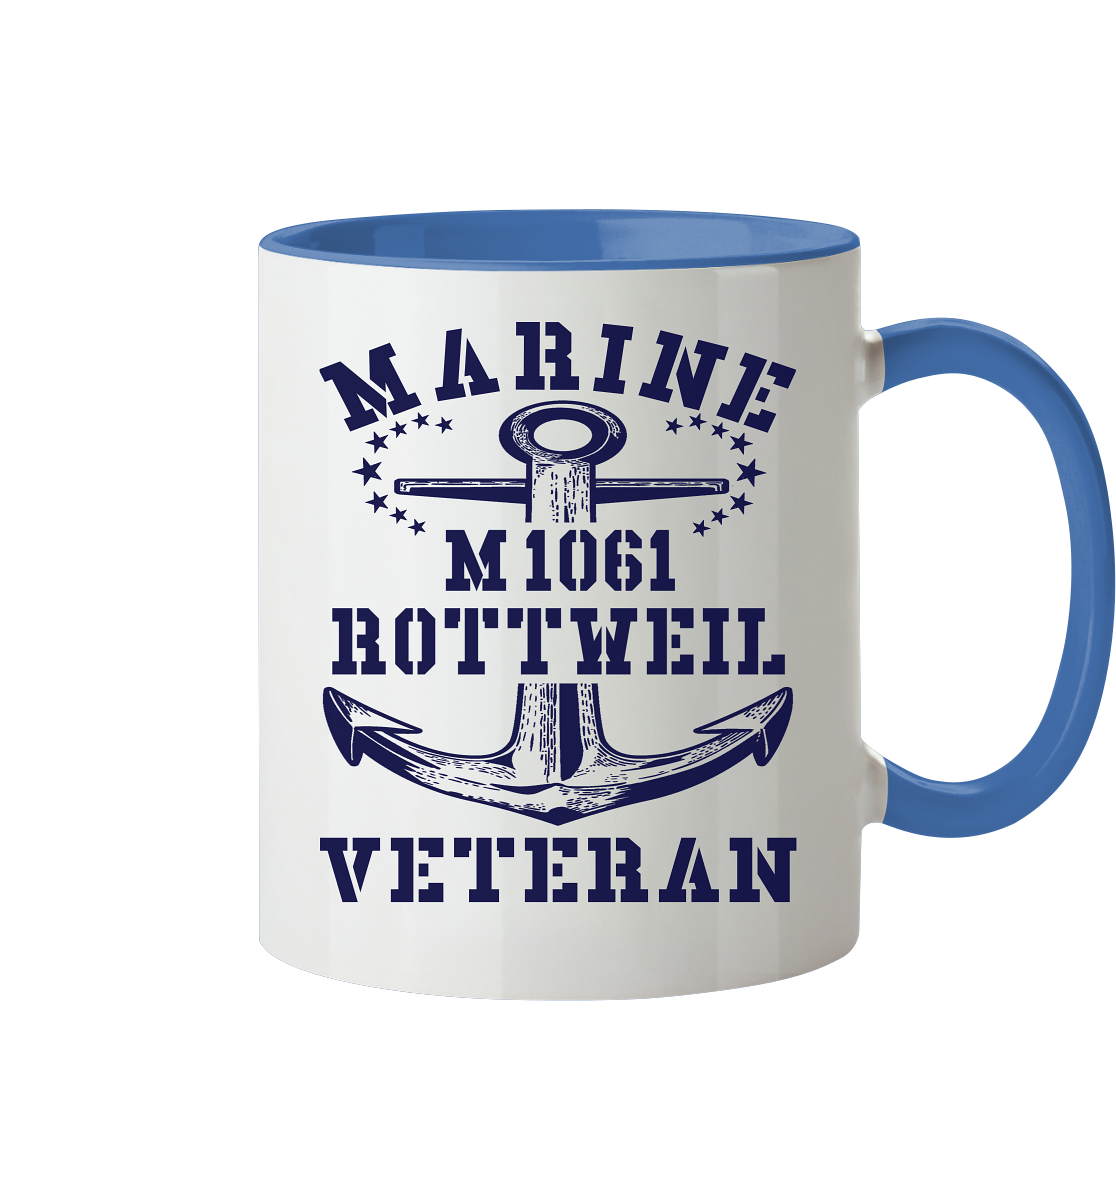 Mij.-Boot M1061 ROTTWEIL Marine Veteran - Tasse zweifarbig